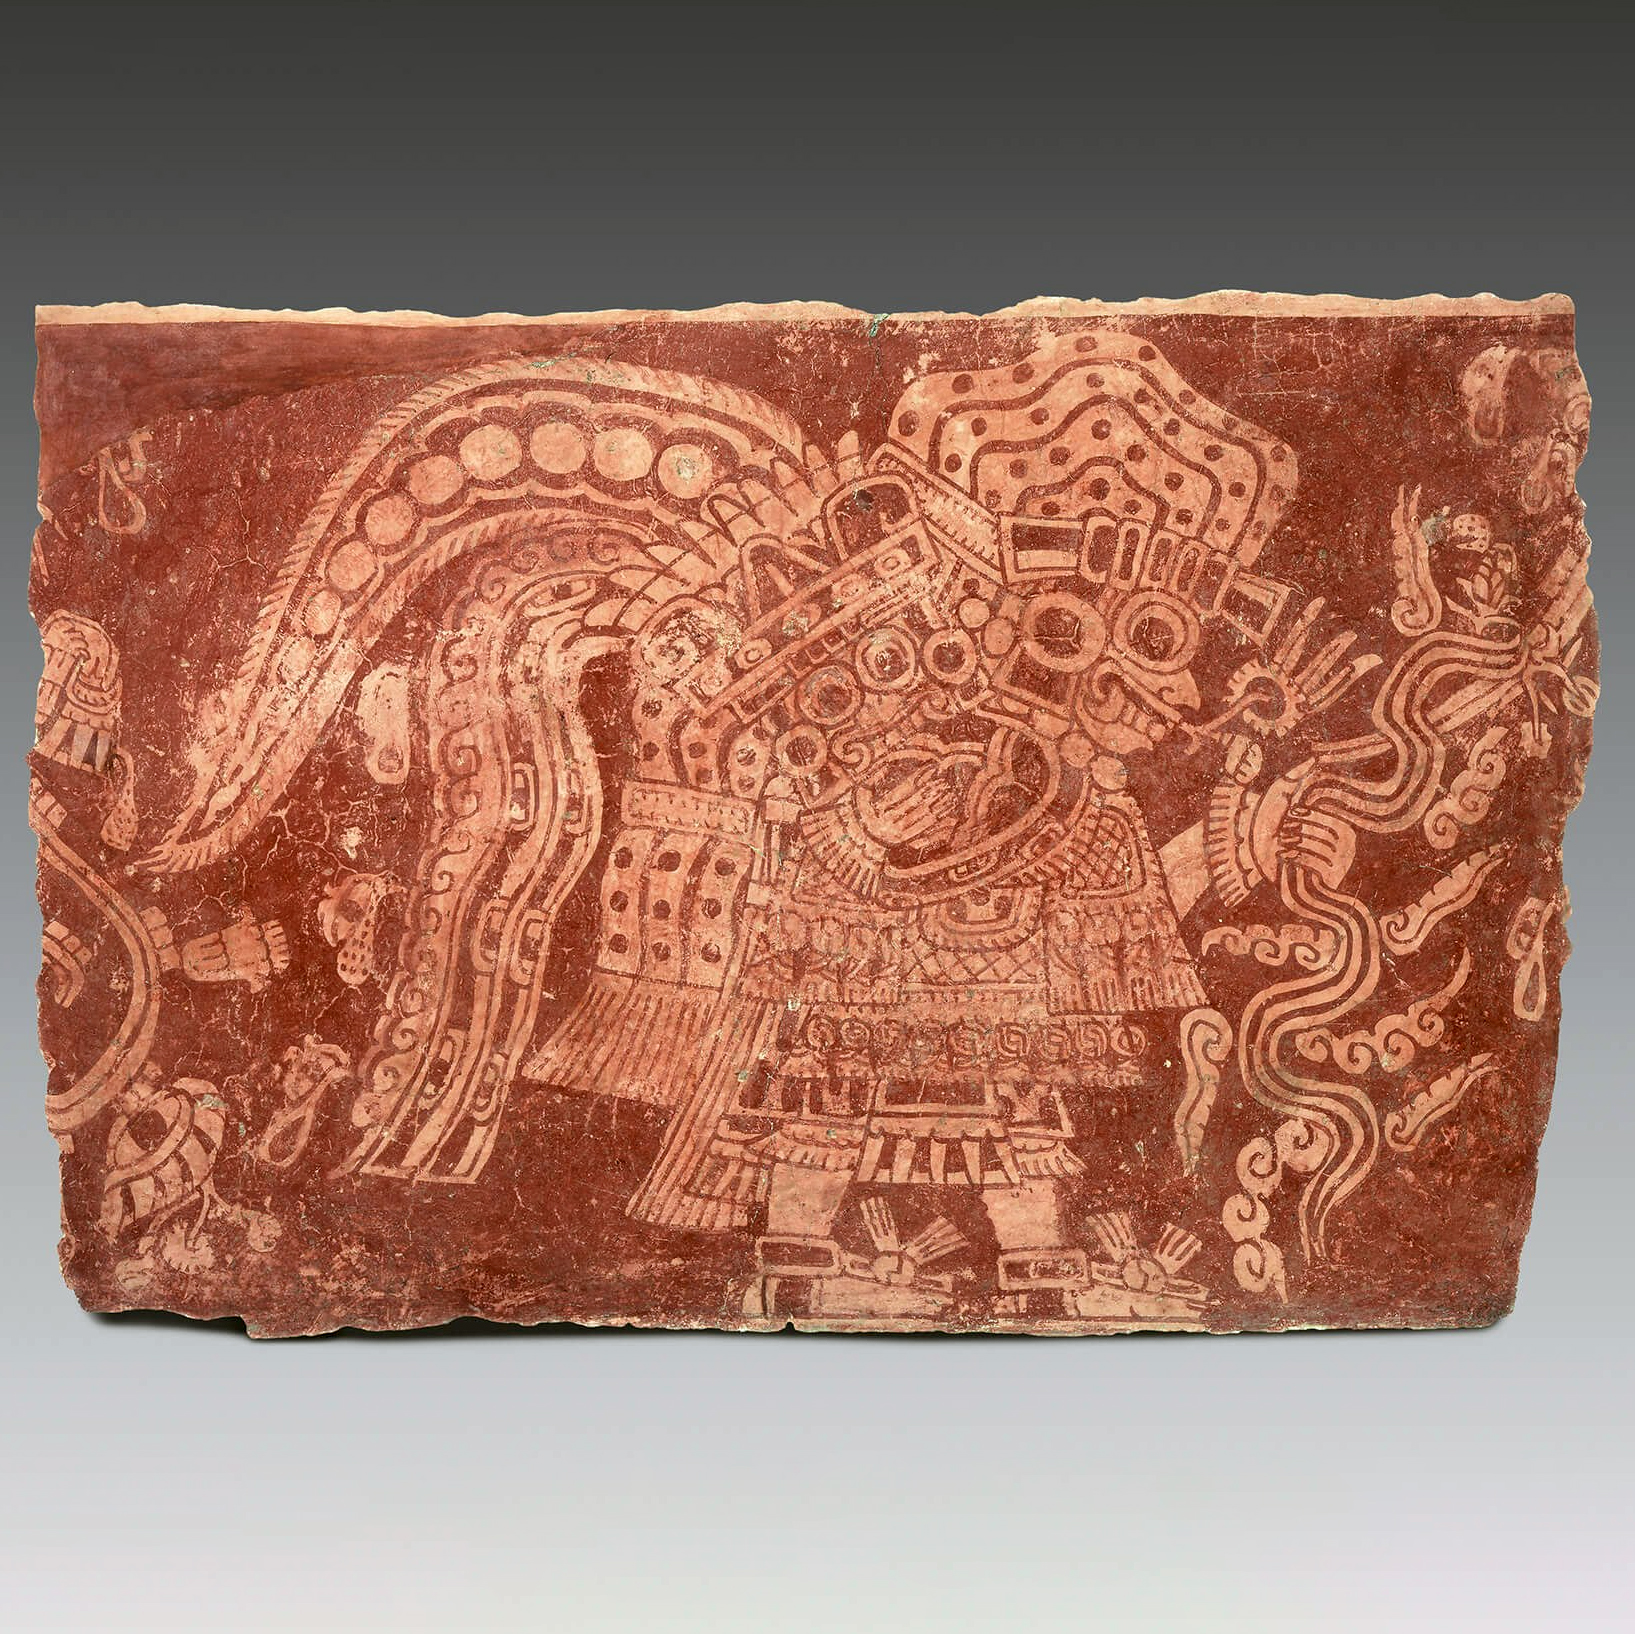 Фрагмент настенной росписи. Теотиуакан, примерно 500 гг. н.э. Коллекция Museo Amparo, Пуэбла, Мексика.